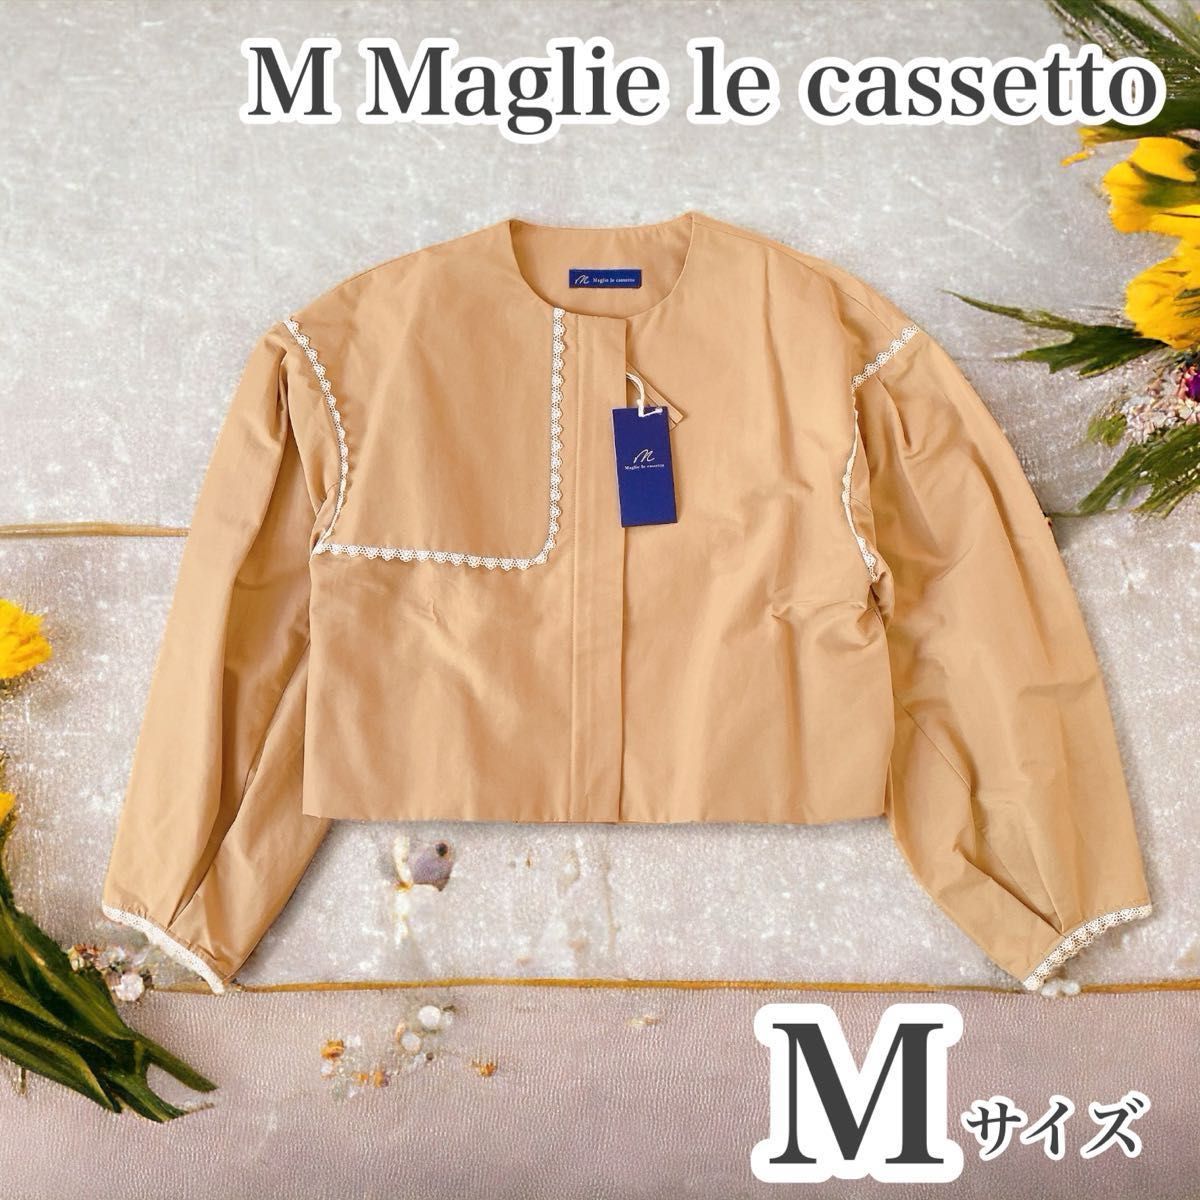 【新品】M Maglie le cassetto ショート丈ブルゾン M レース ノーカラー ジャケット